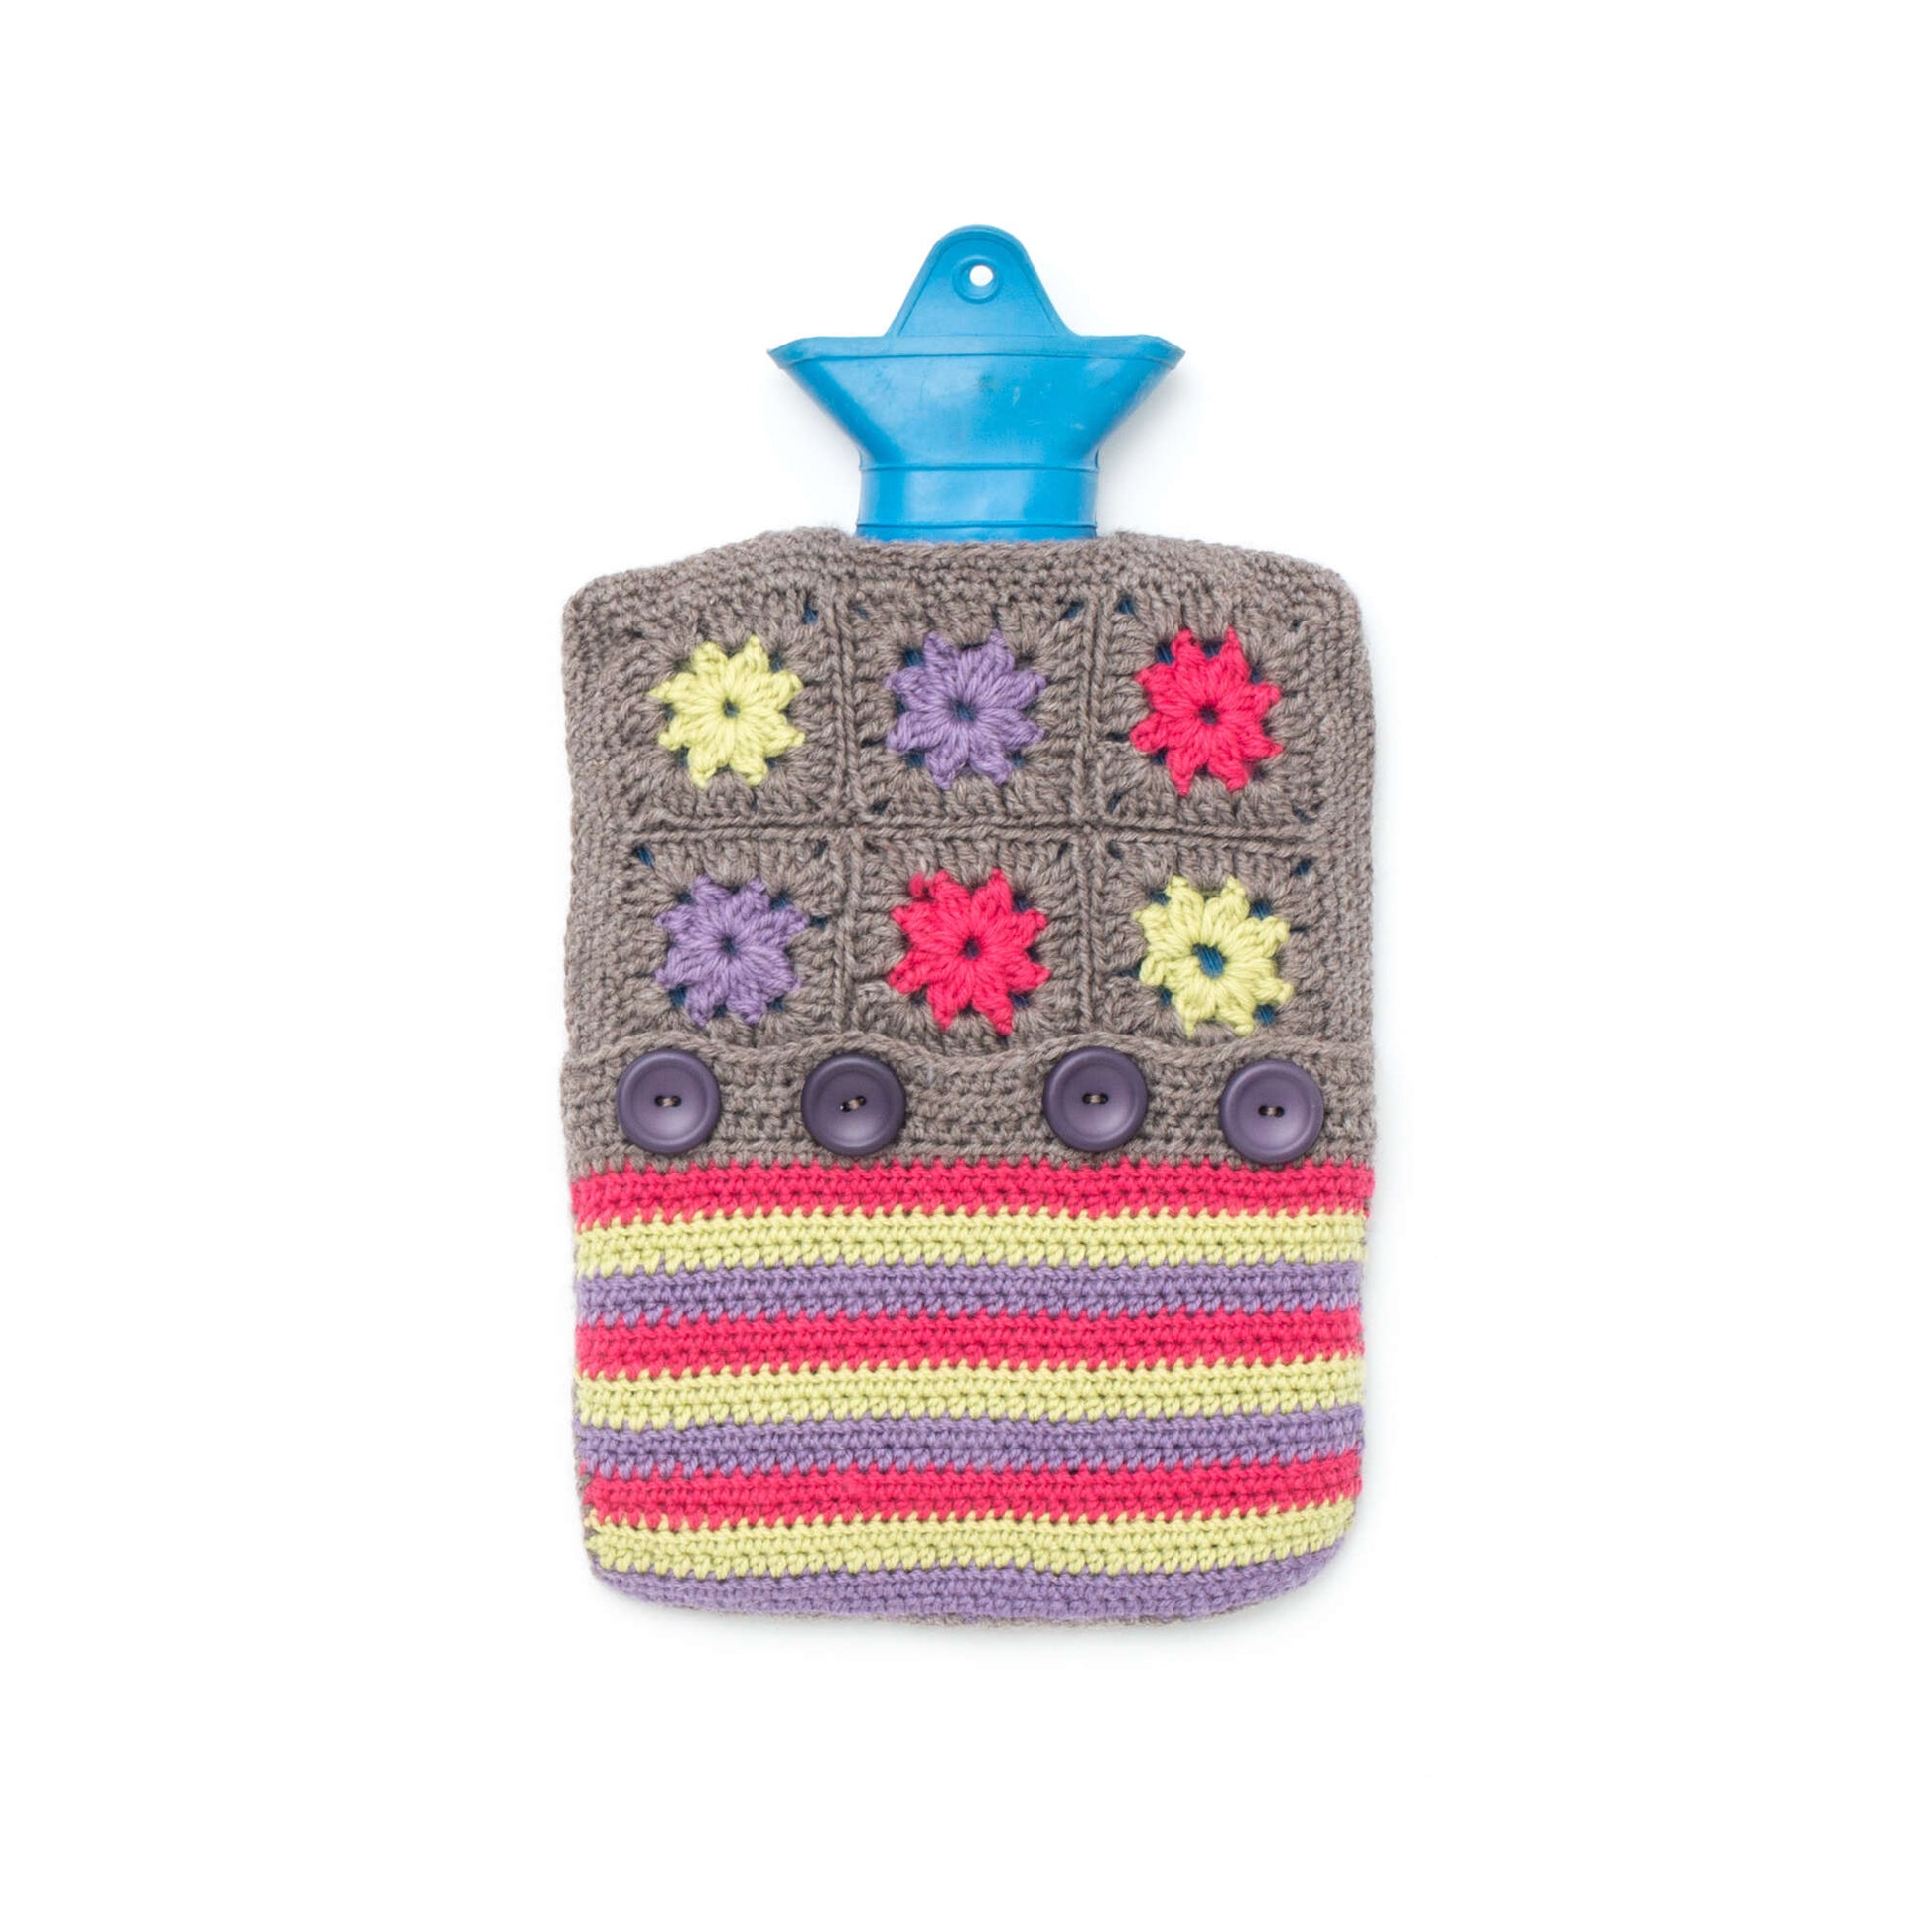 Free Patons Color Wheel Hot Water Bottle Cozy Crochet Pattern